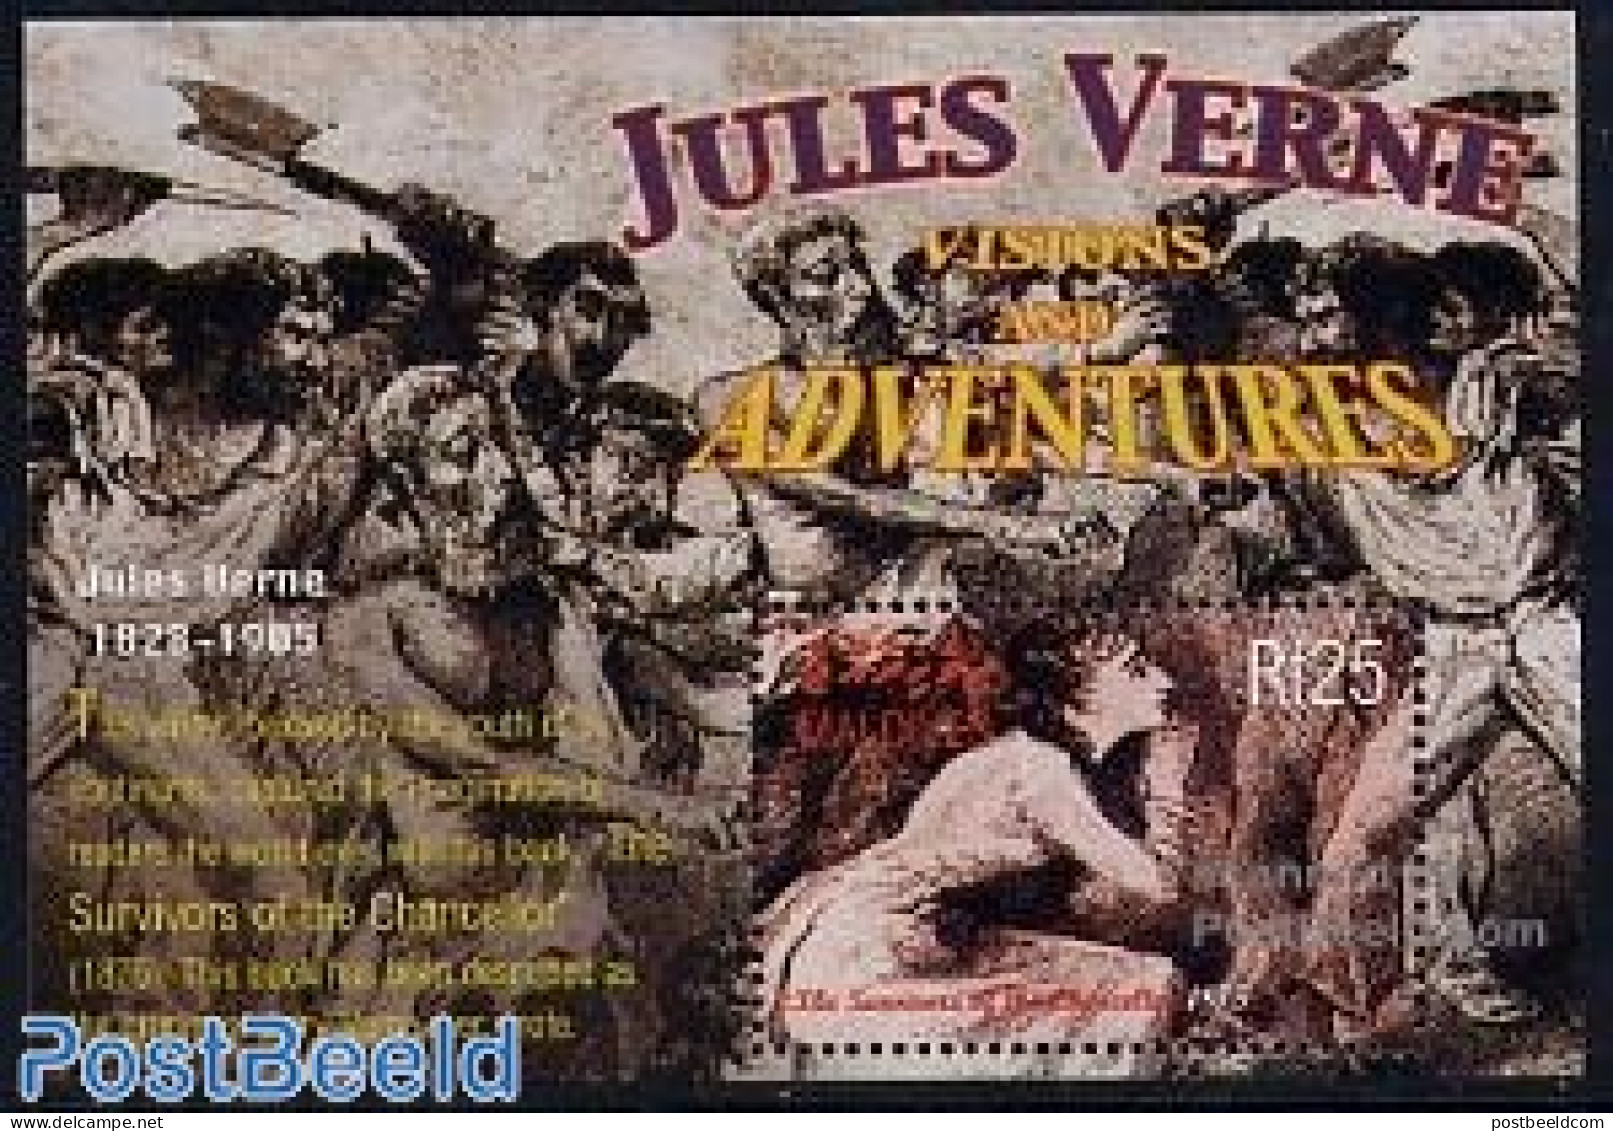 Maldives 2004 Jules Verne S/s, Survivers Of The Chancellor, Mint NH, Art - Jules Verne - Science Fiction - Zonder Classificatie